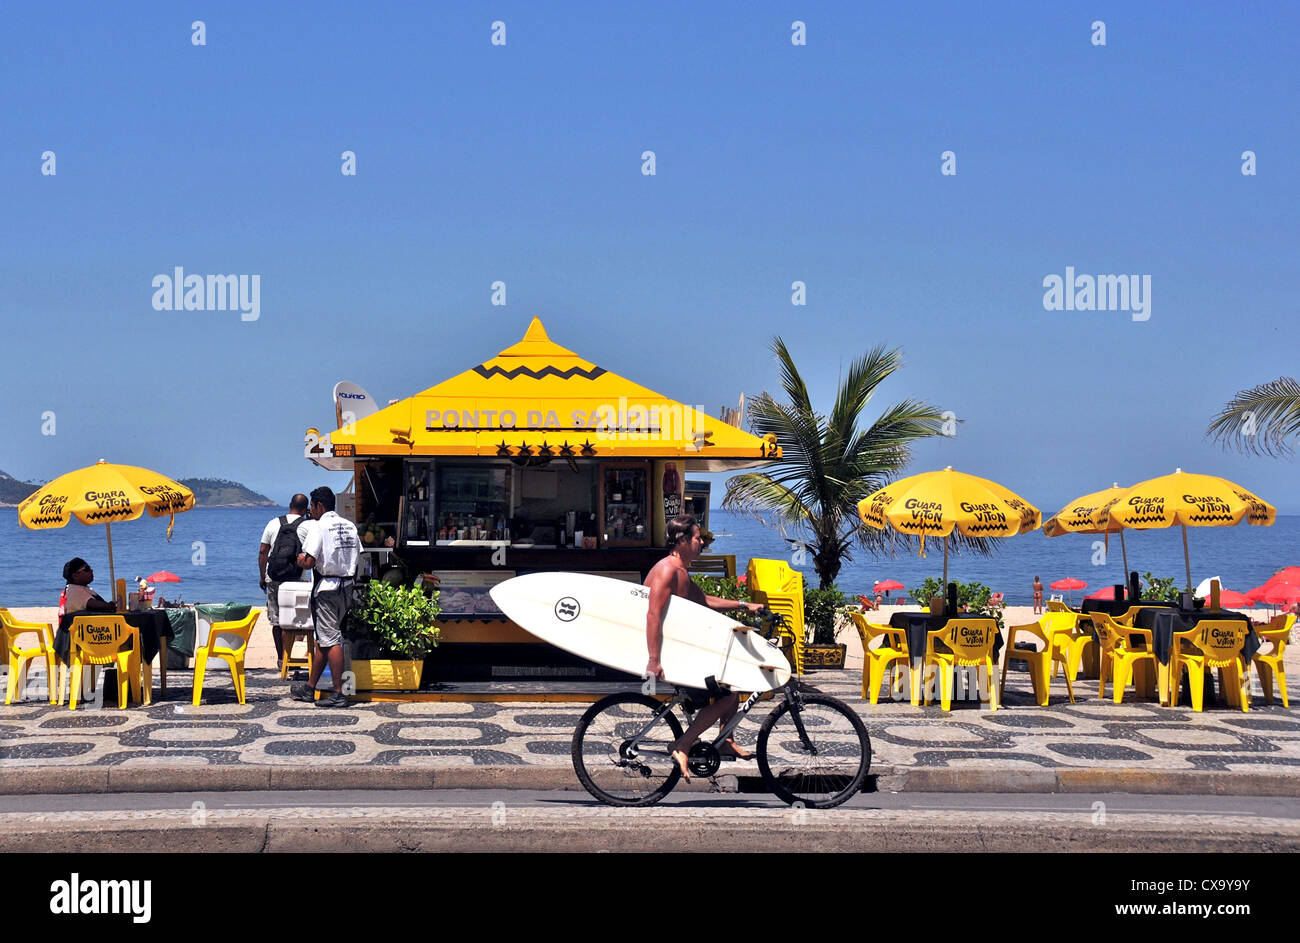 La plage d'Ipanema Ponto da Saude kiosk Vieira Souto avenue Rio de Janeiro Brésil Banque D'Images